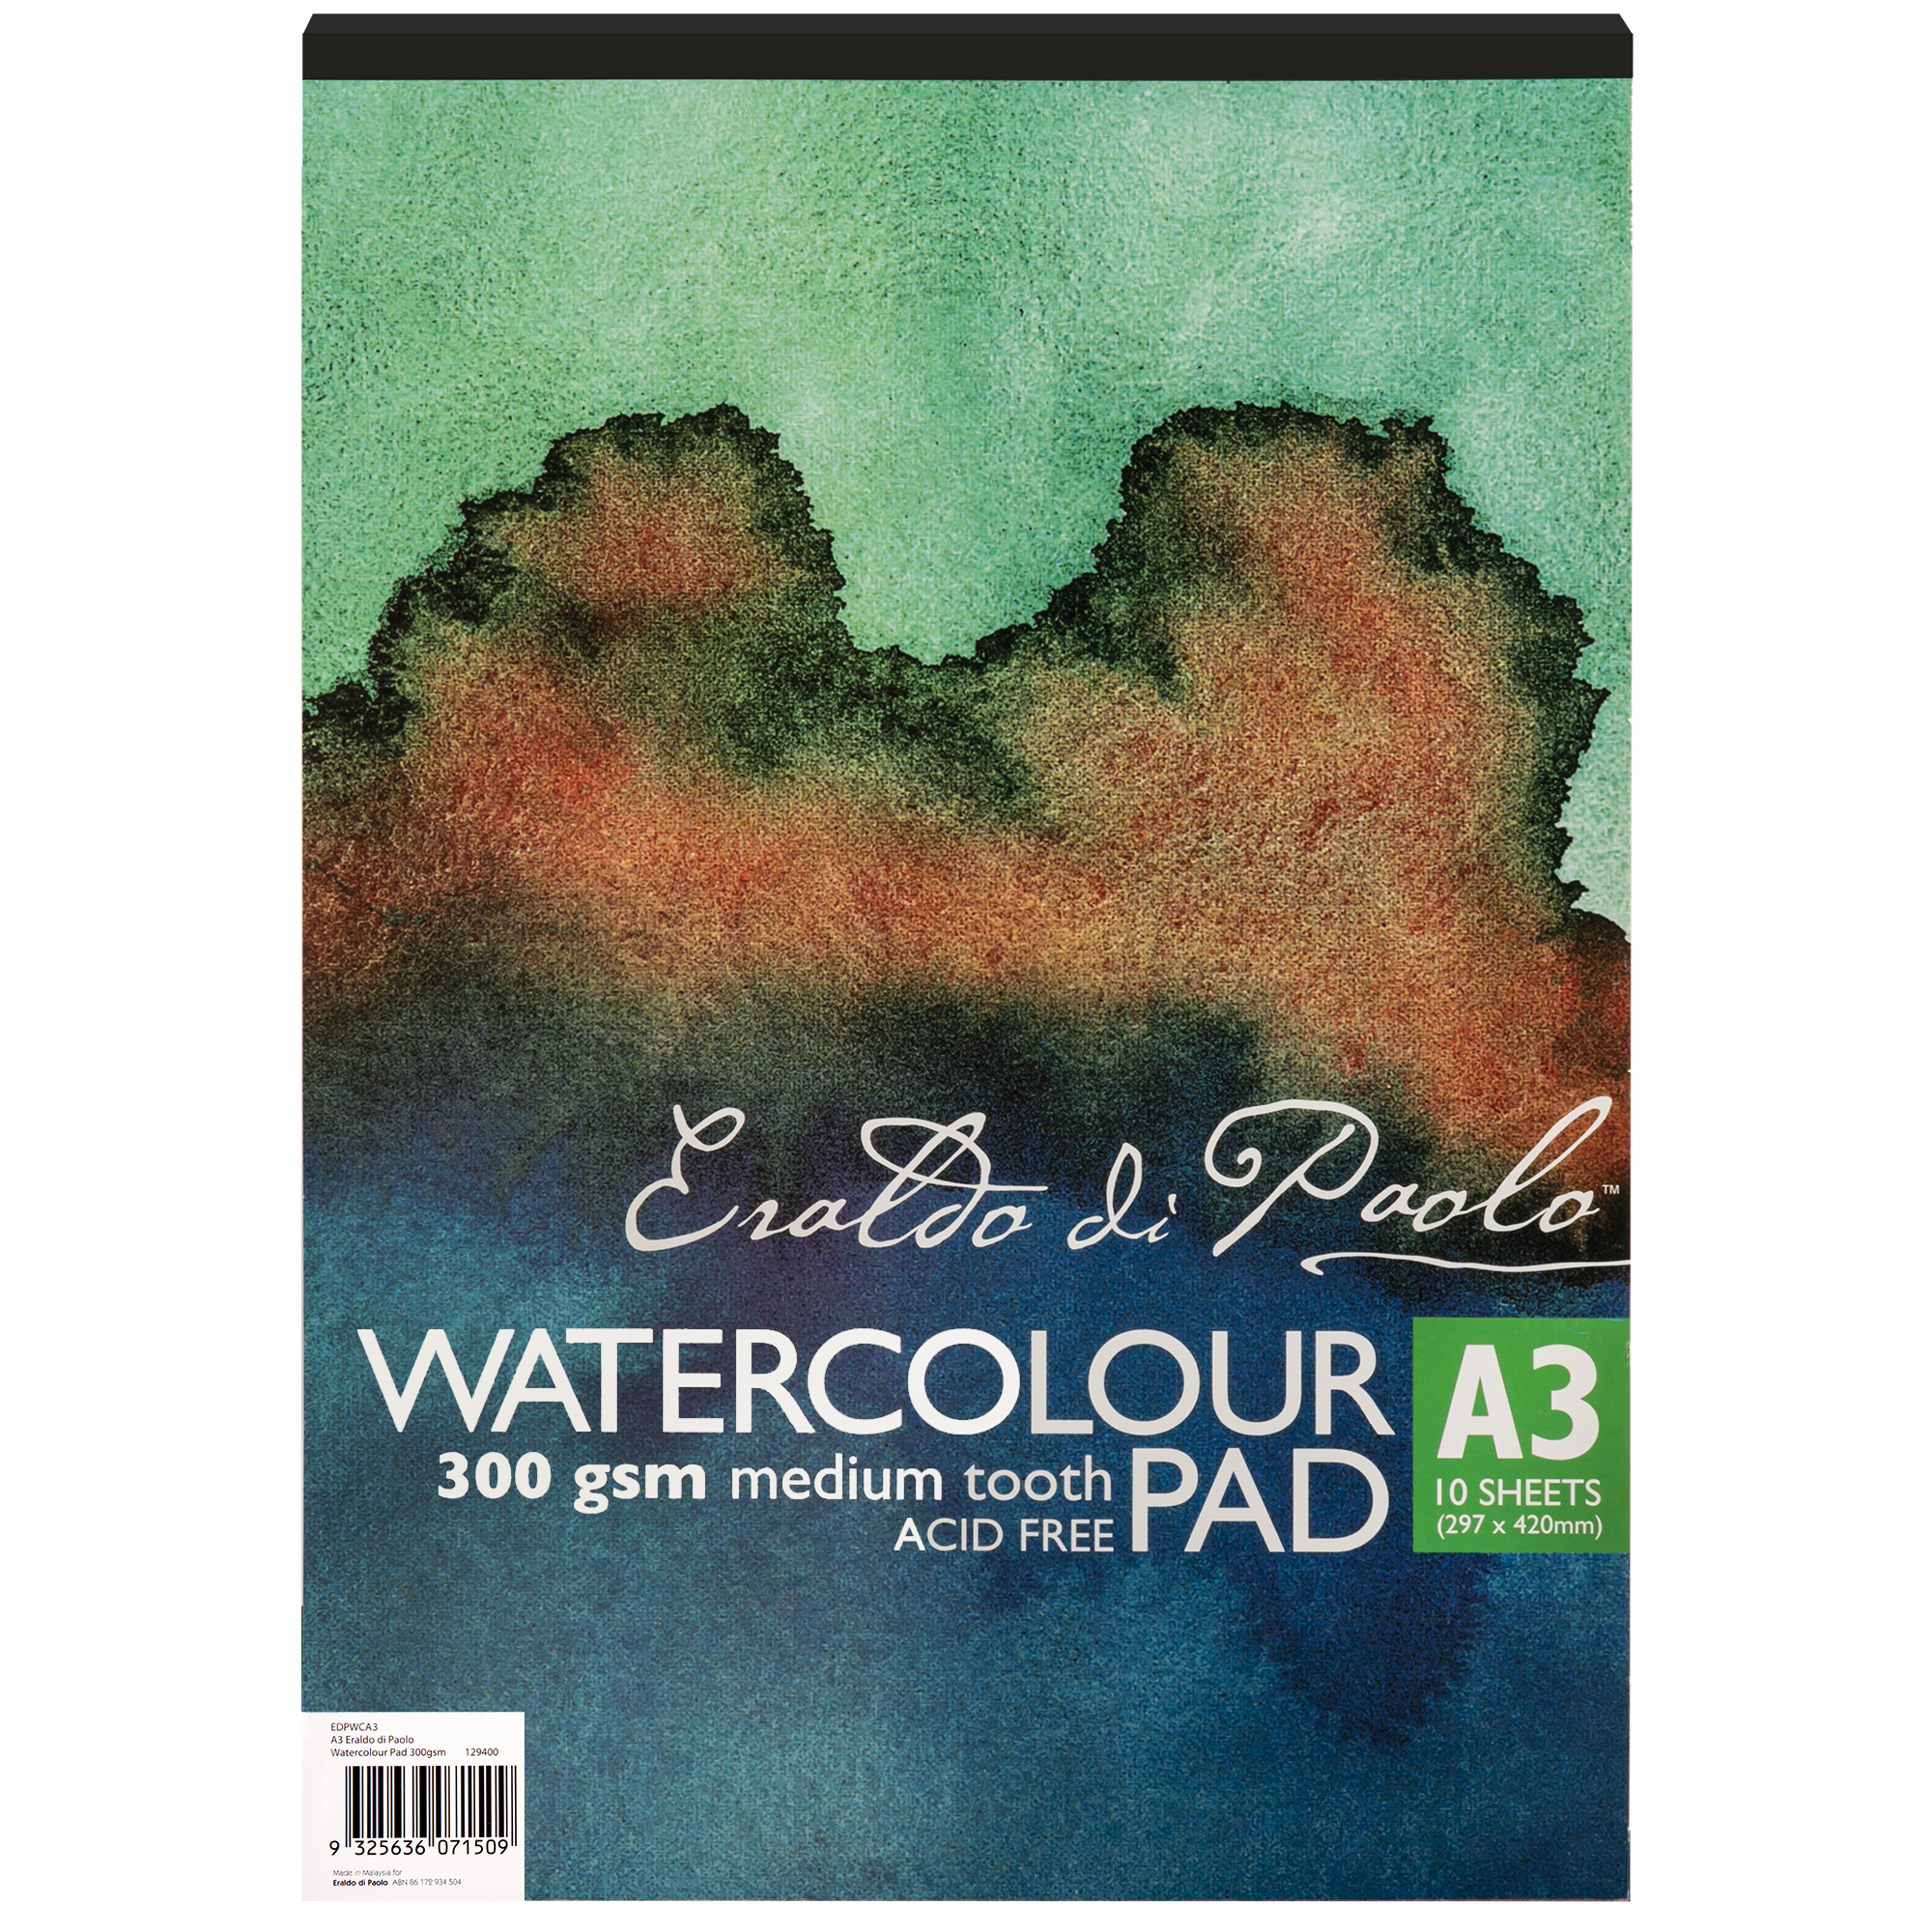 A3, Watercolour Paper Pad (100% Cotton / Cellulose Cold Pressed) - Campap